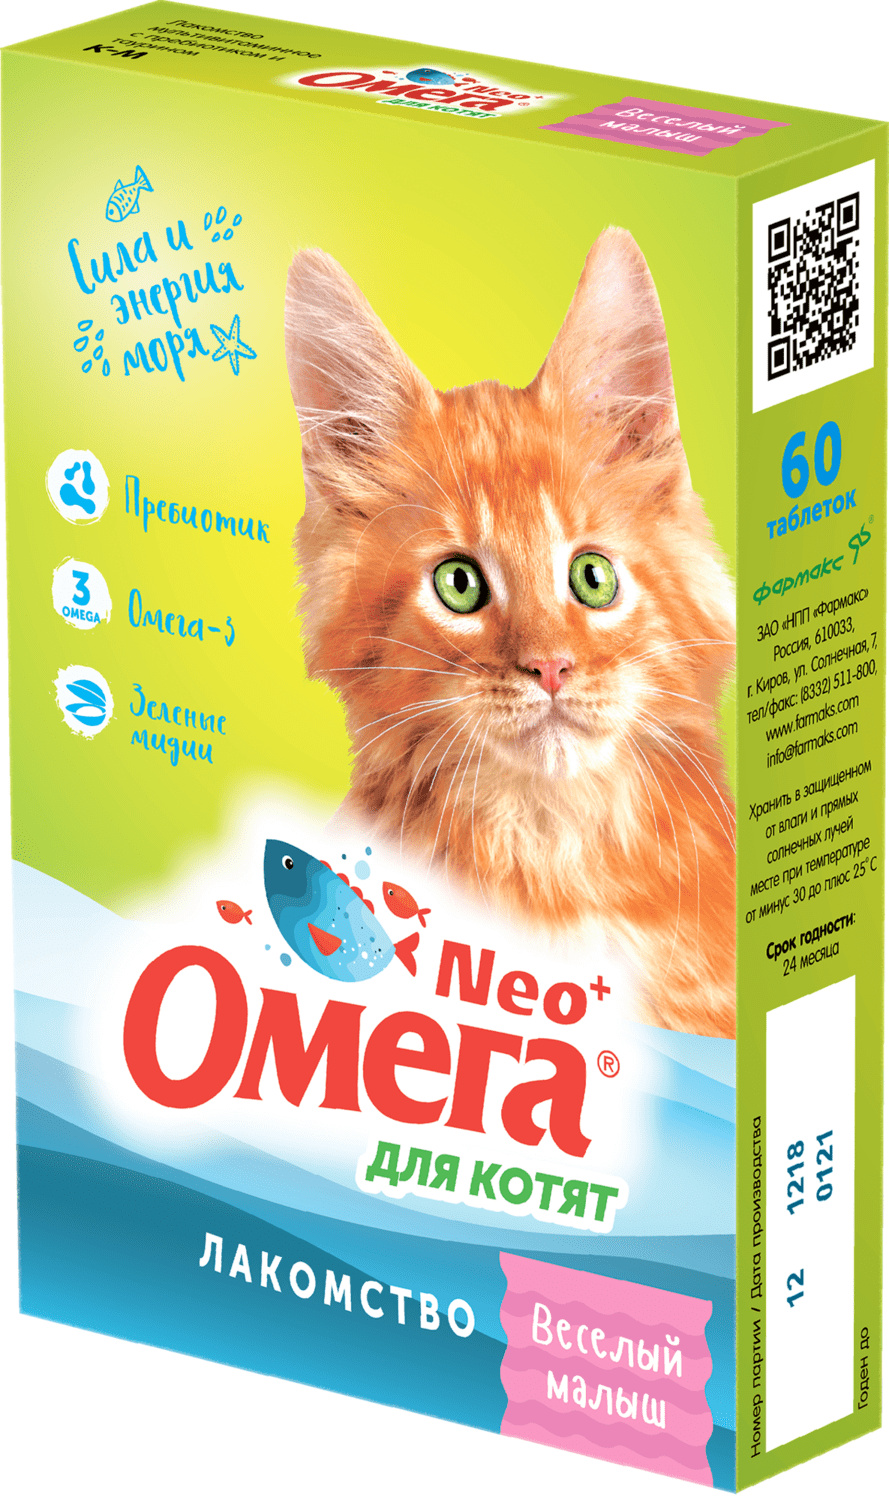 Фармакс Фармакс мультивитаминное лакомство Омега Neo+ Веселый малыш с пребиотиком и таурином для котят (60 г)